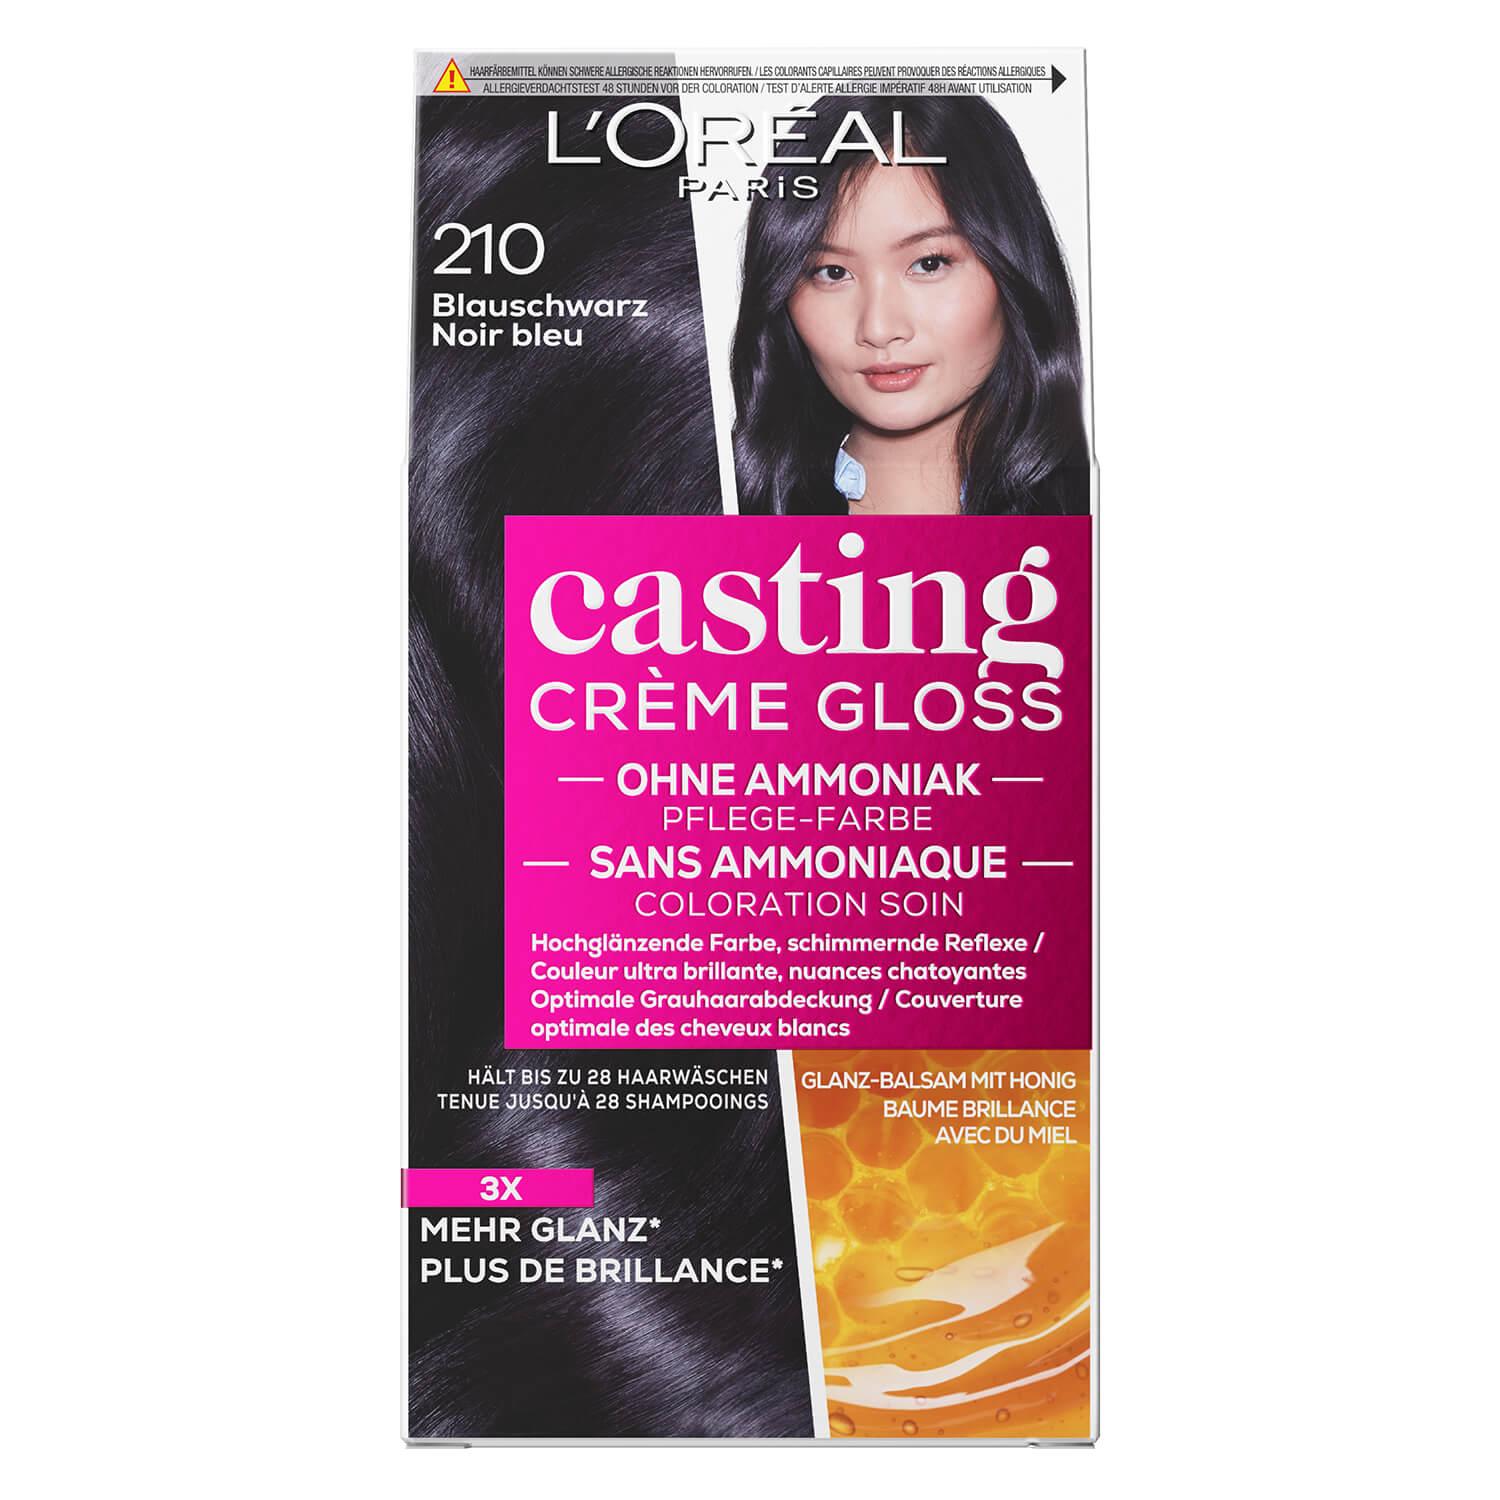 LOréal Casting - Crème Gloss 210 Noir Bleu